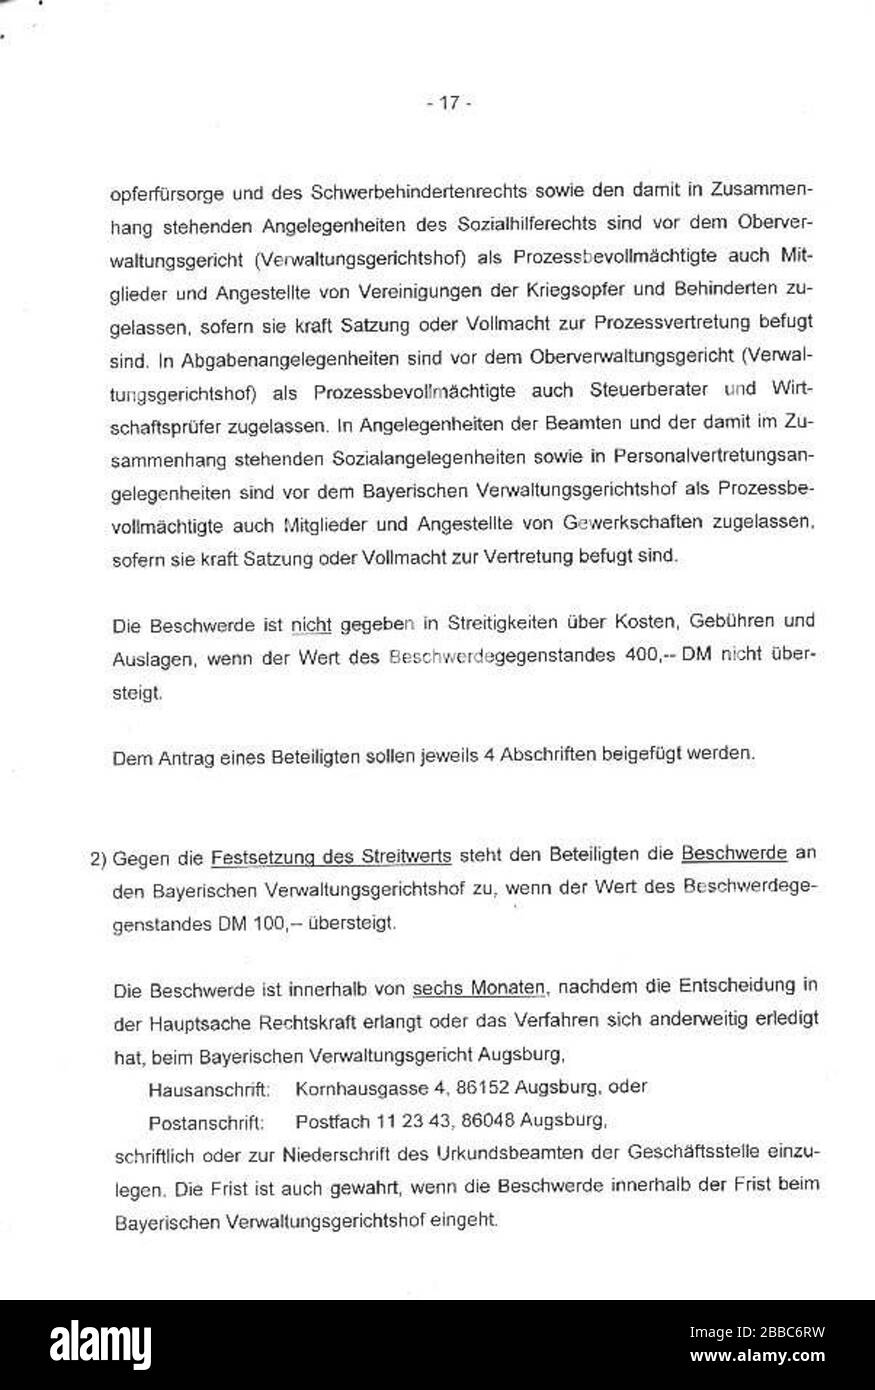 'Bayerisches Verwaltungsgericht Augsburg; Die Archiv-Affäre - Das Urteil; [1]; ' Stock Photo